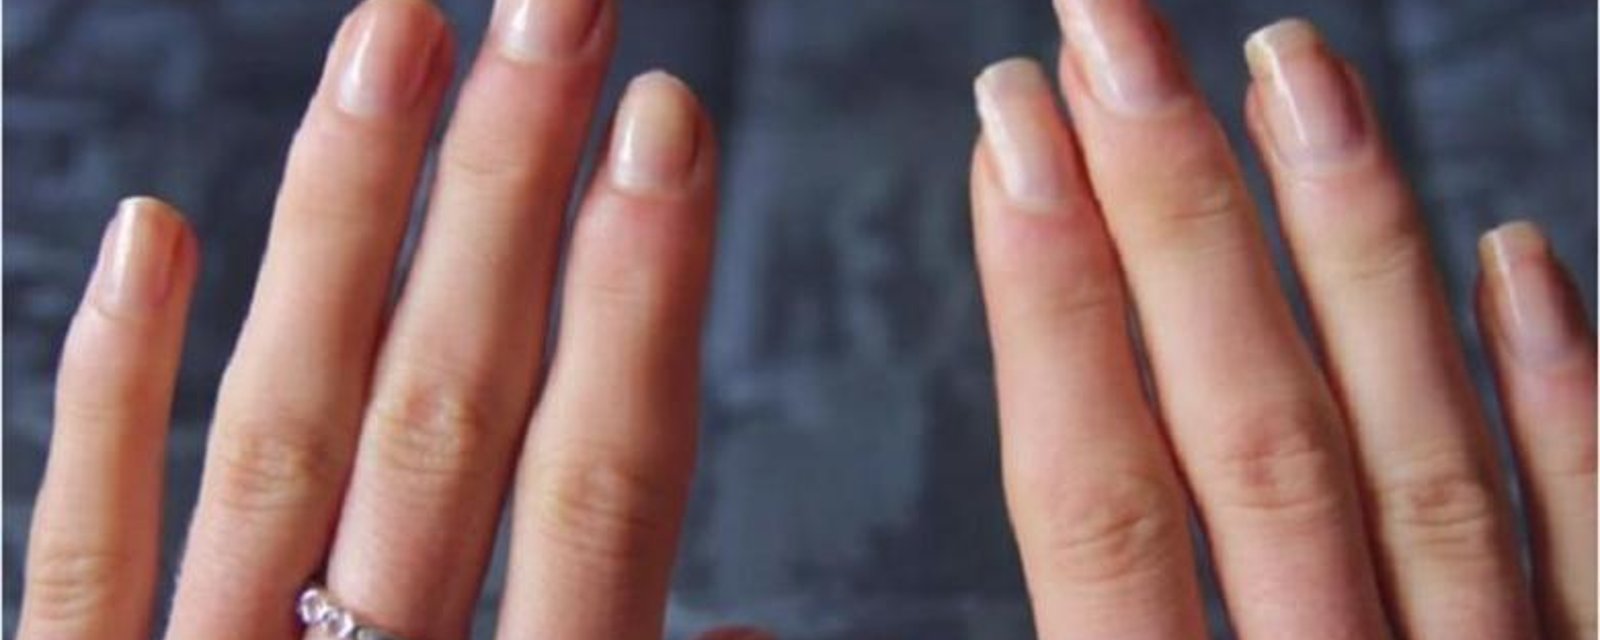 Recette extrême pour la croissance des ongles! Faites allonger vos ongles plus rapidement! 